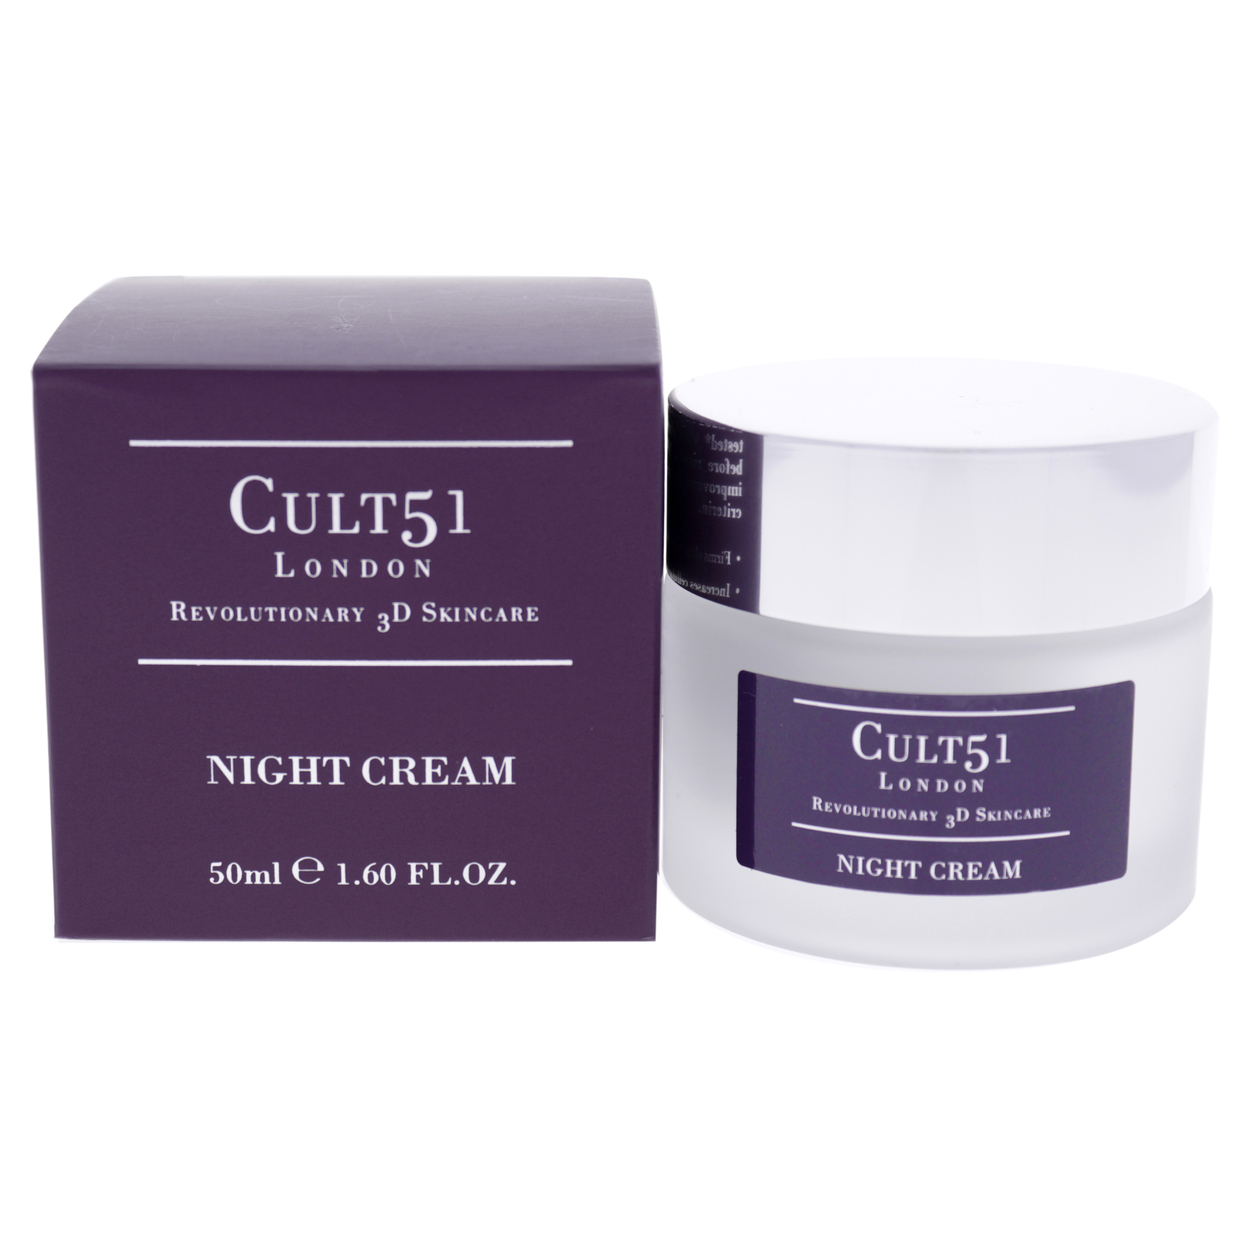 Cult51 Night Cream 1.60 Oz